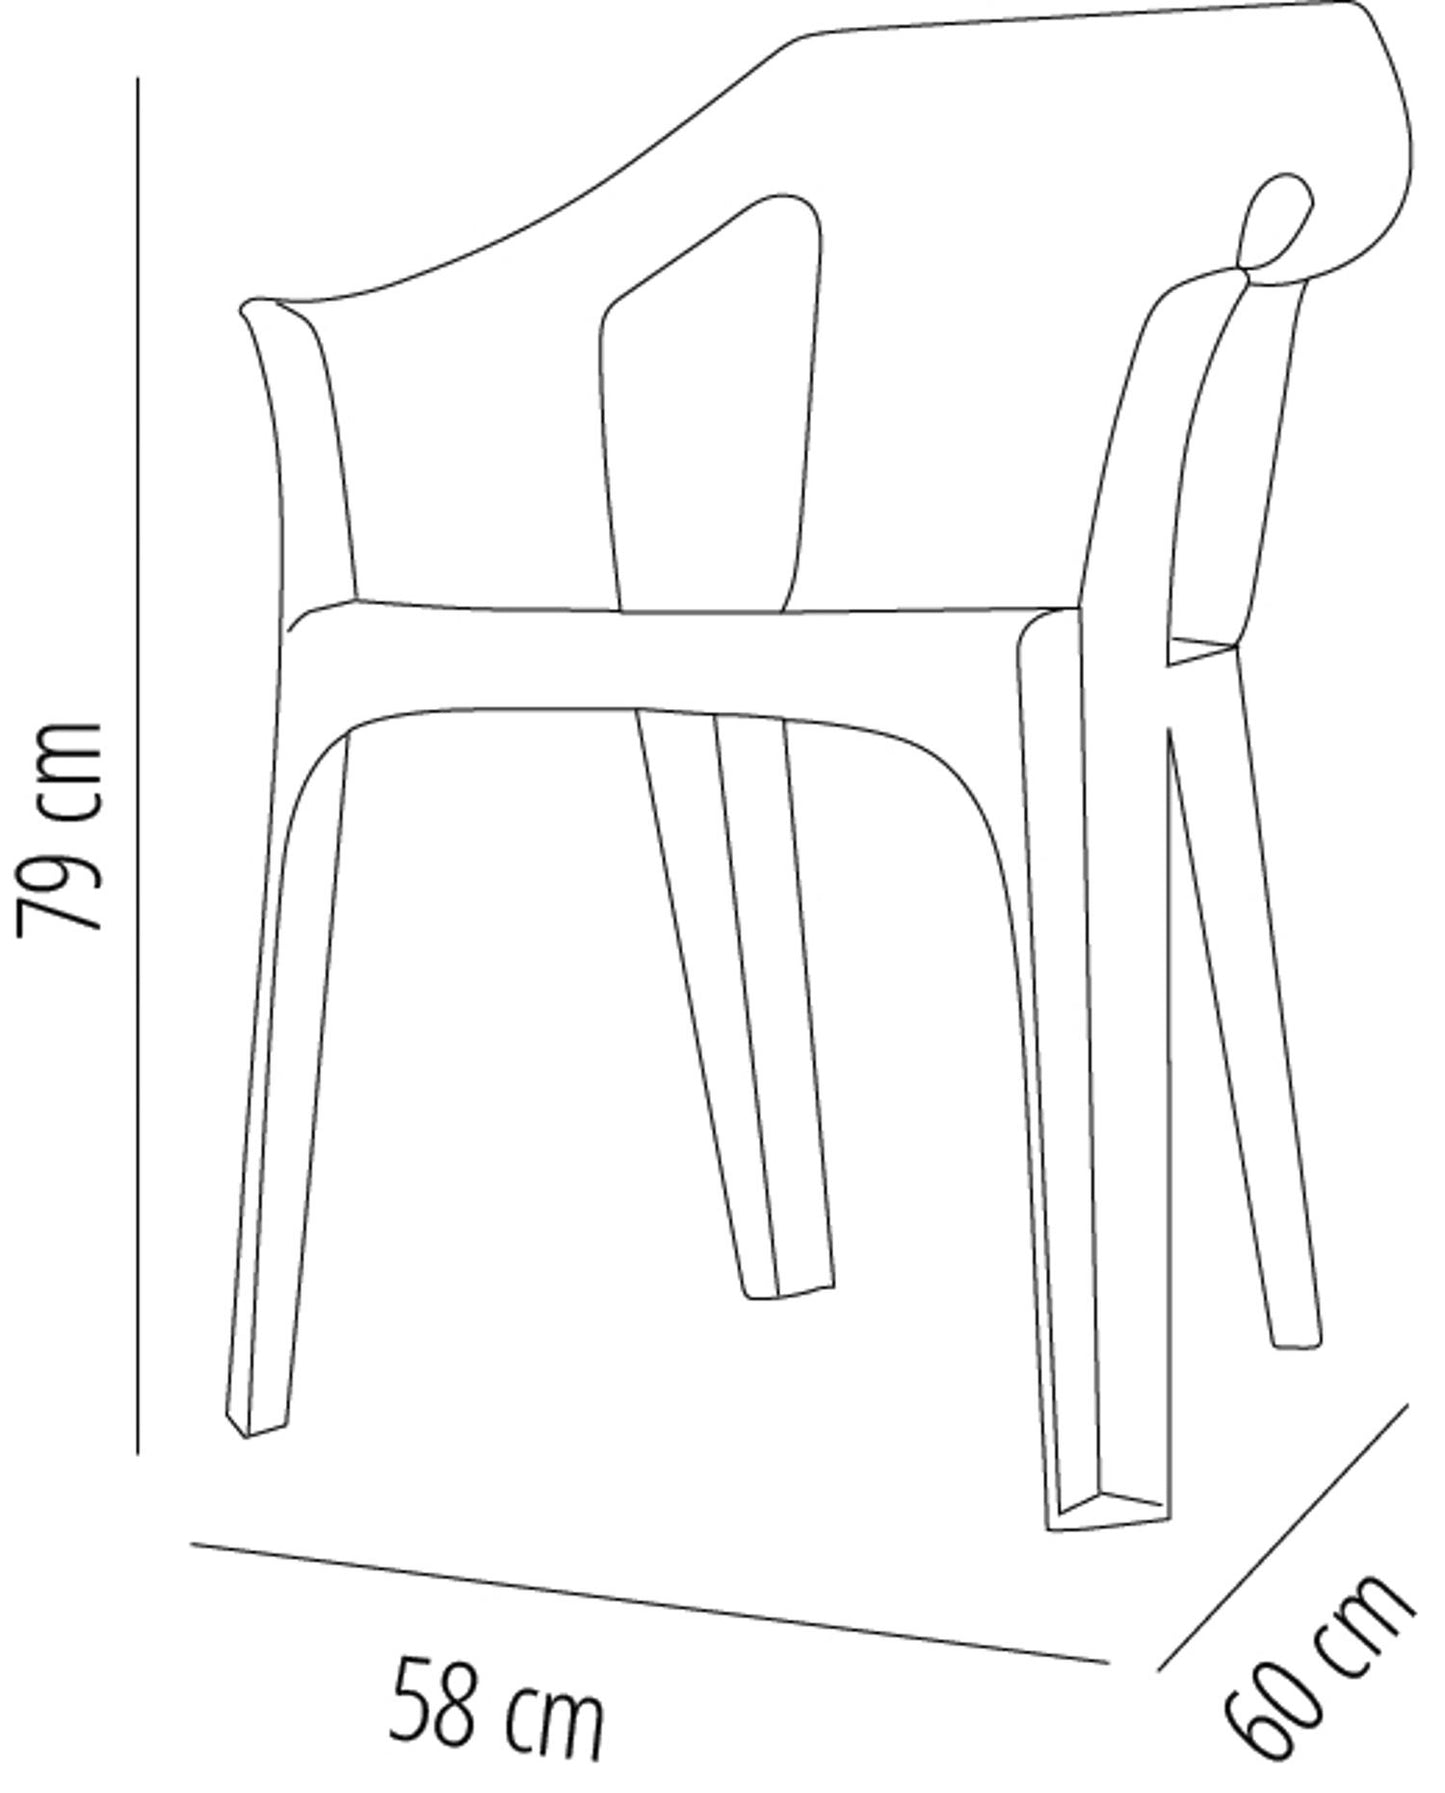 Garbar cool set 2 silla con brazos exterior gris oscuro